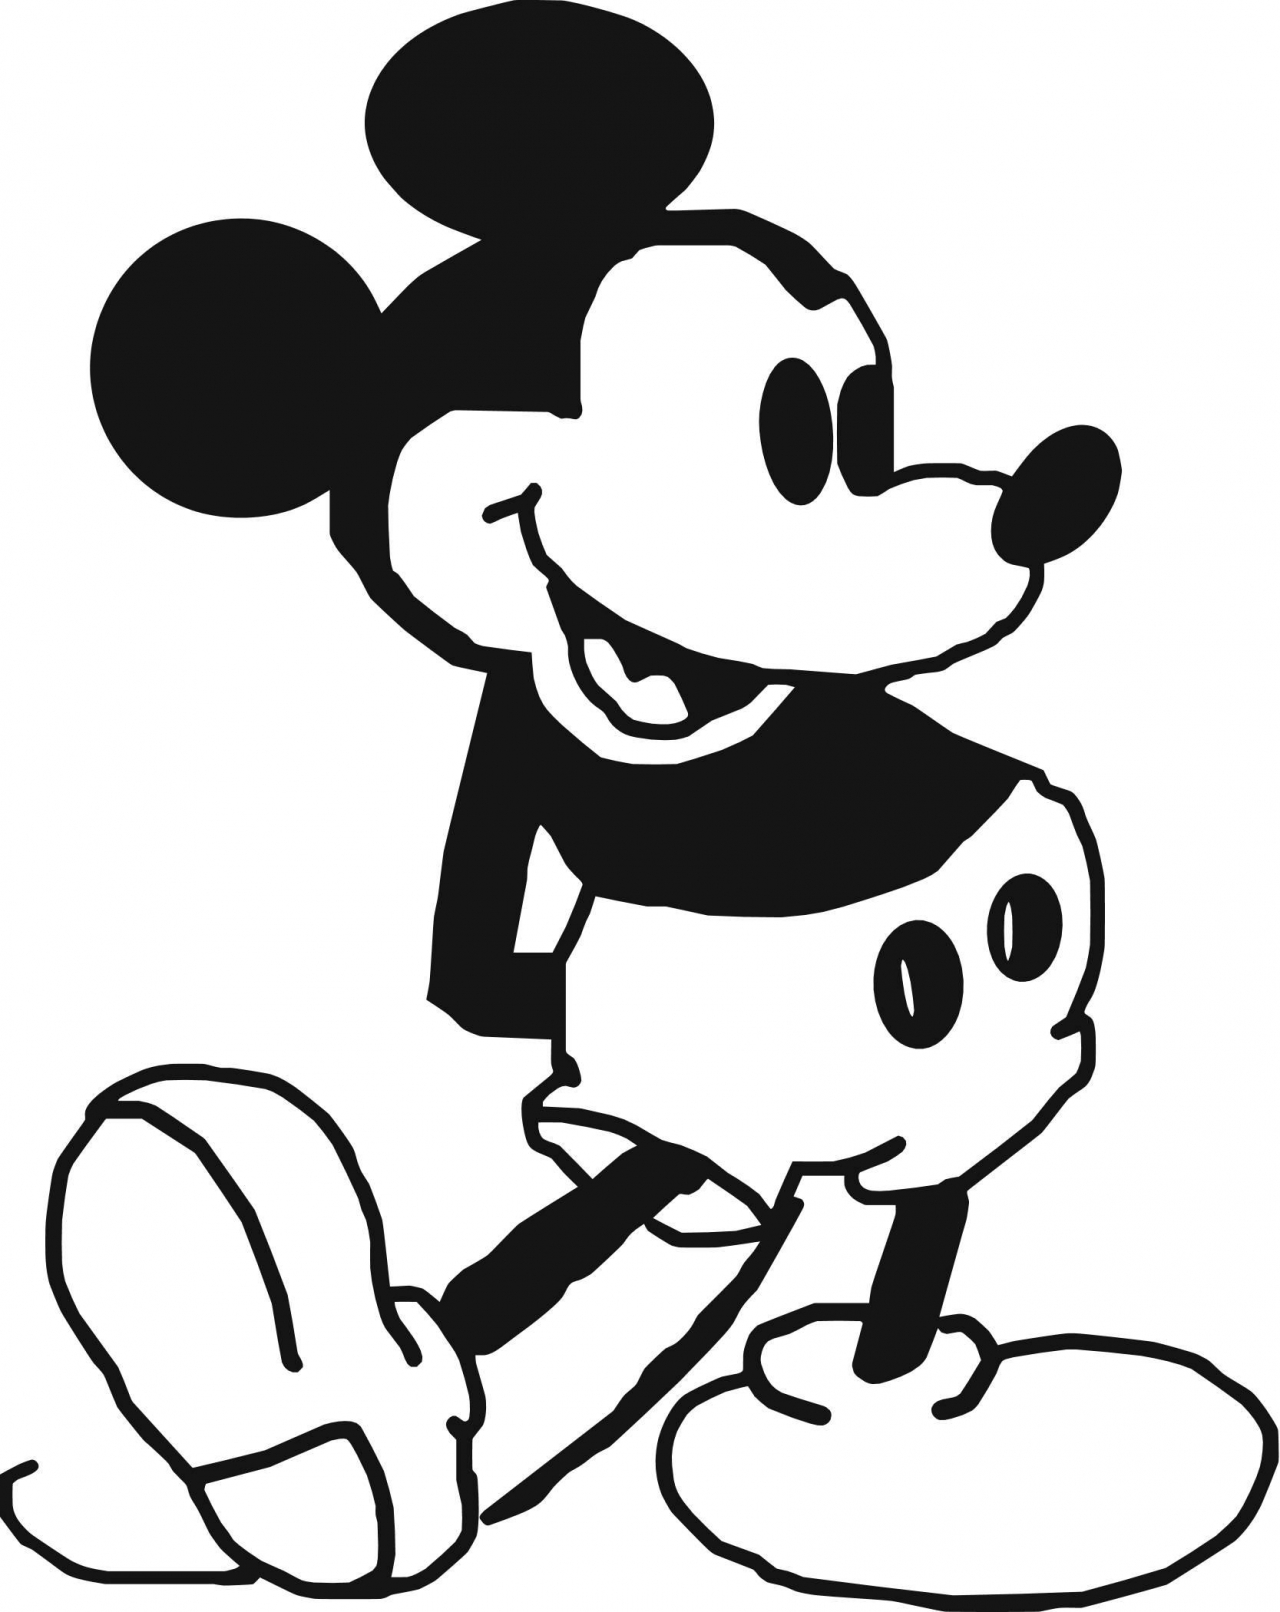 미키 마우스 배경 흑백,만화,클립 아트,라인 아트,검정색과 흰색,삽화